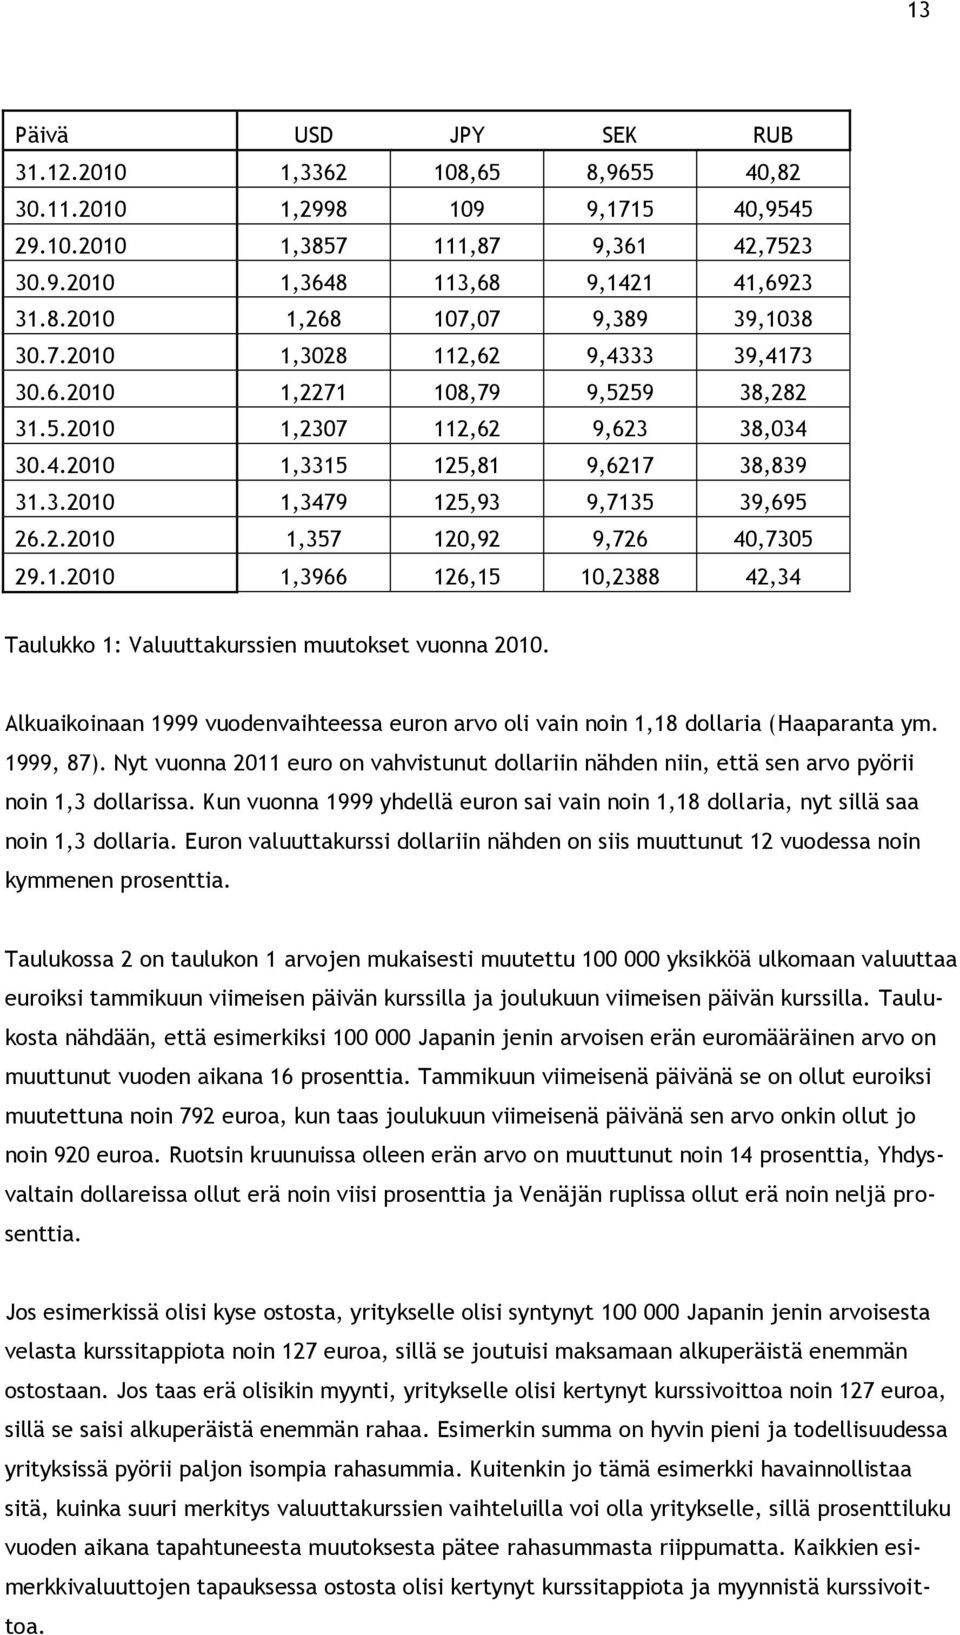 1.2010 1,3966 126,15 10,2388 42,34 Taulukko 1: Valuuttakurssien muutokset vuonna 2010. Alkuaikoinaan 1999 vuodenvaihteessa euron arvo oli vain noin 1,18 dollaria (Haaparanta ym. 1999, 87).